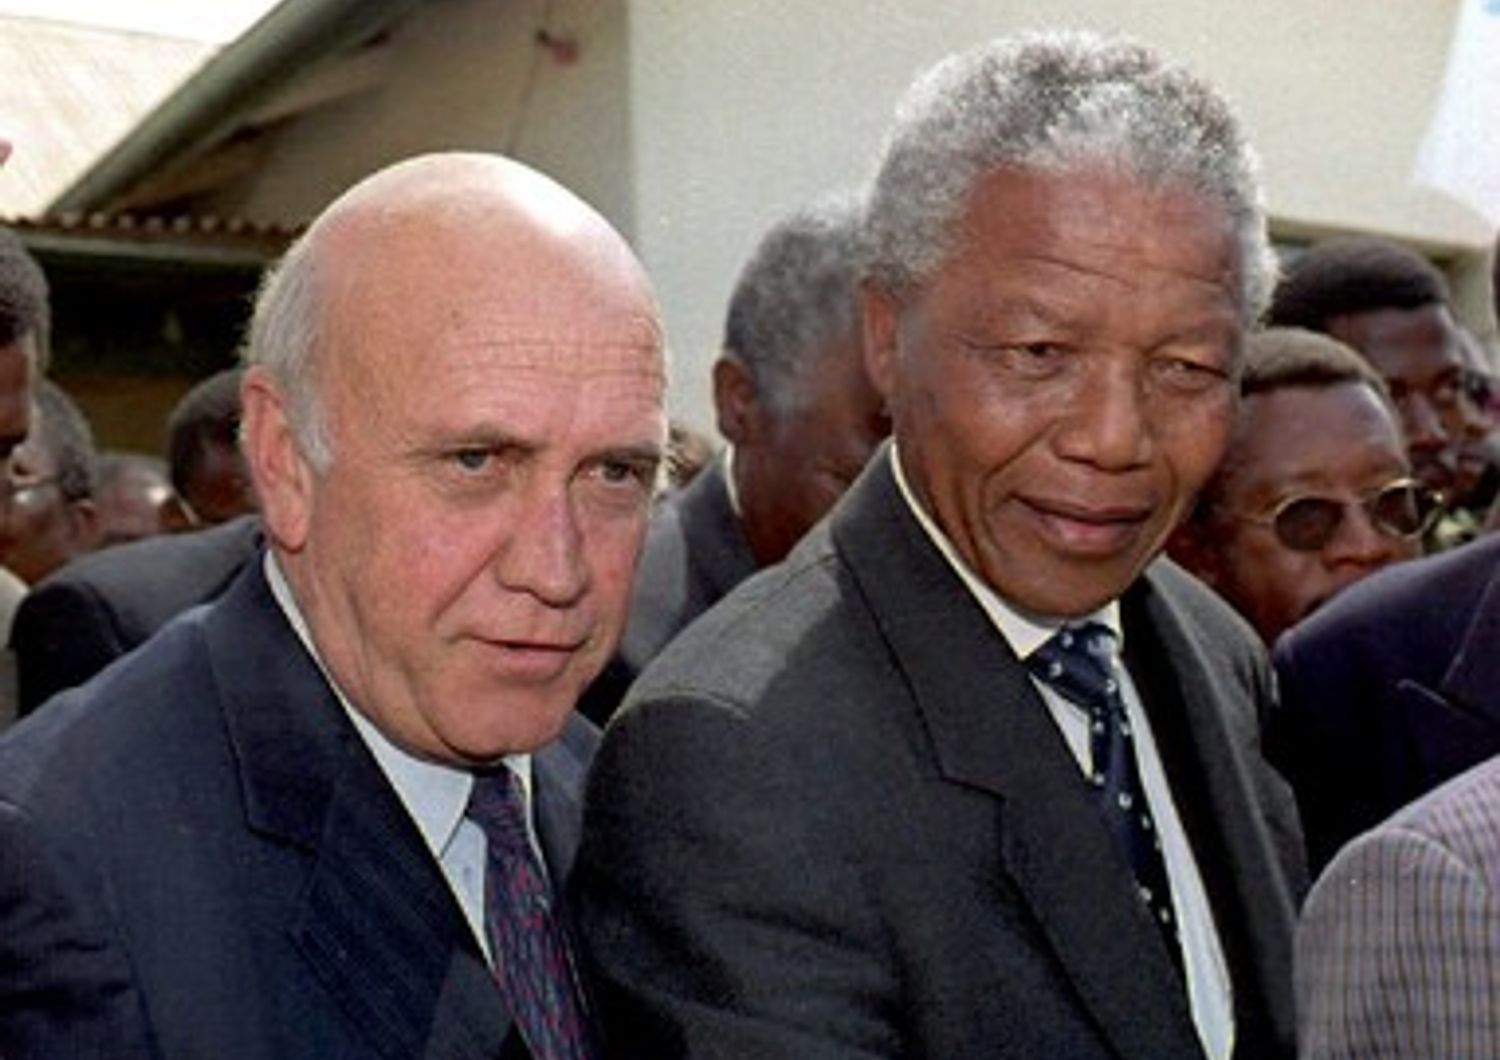 L'ex presidente sudafricano Frederick de Klerk e Nelson Mandela